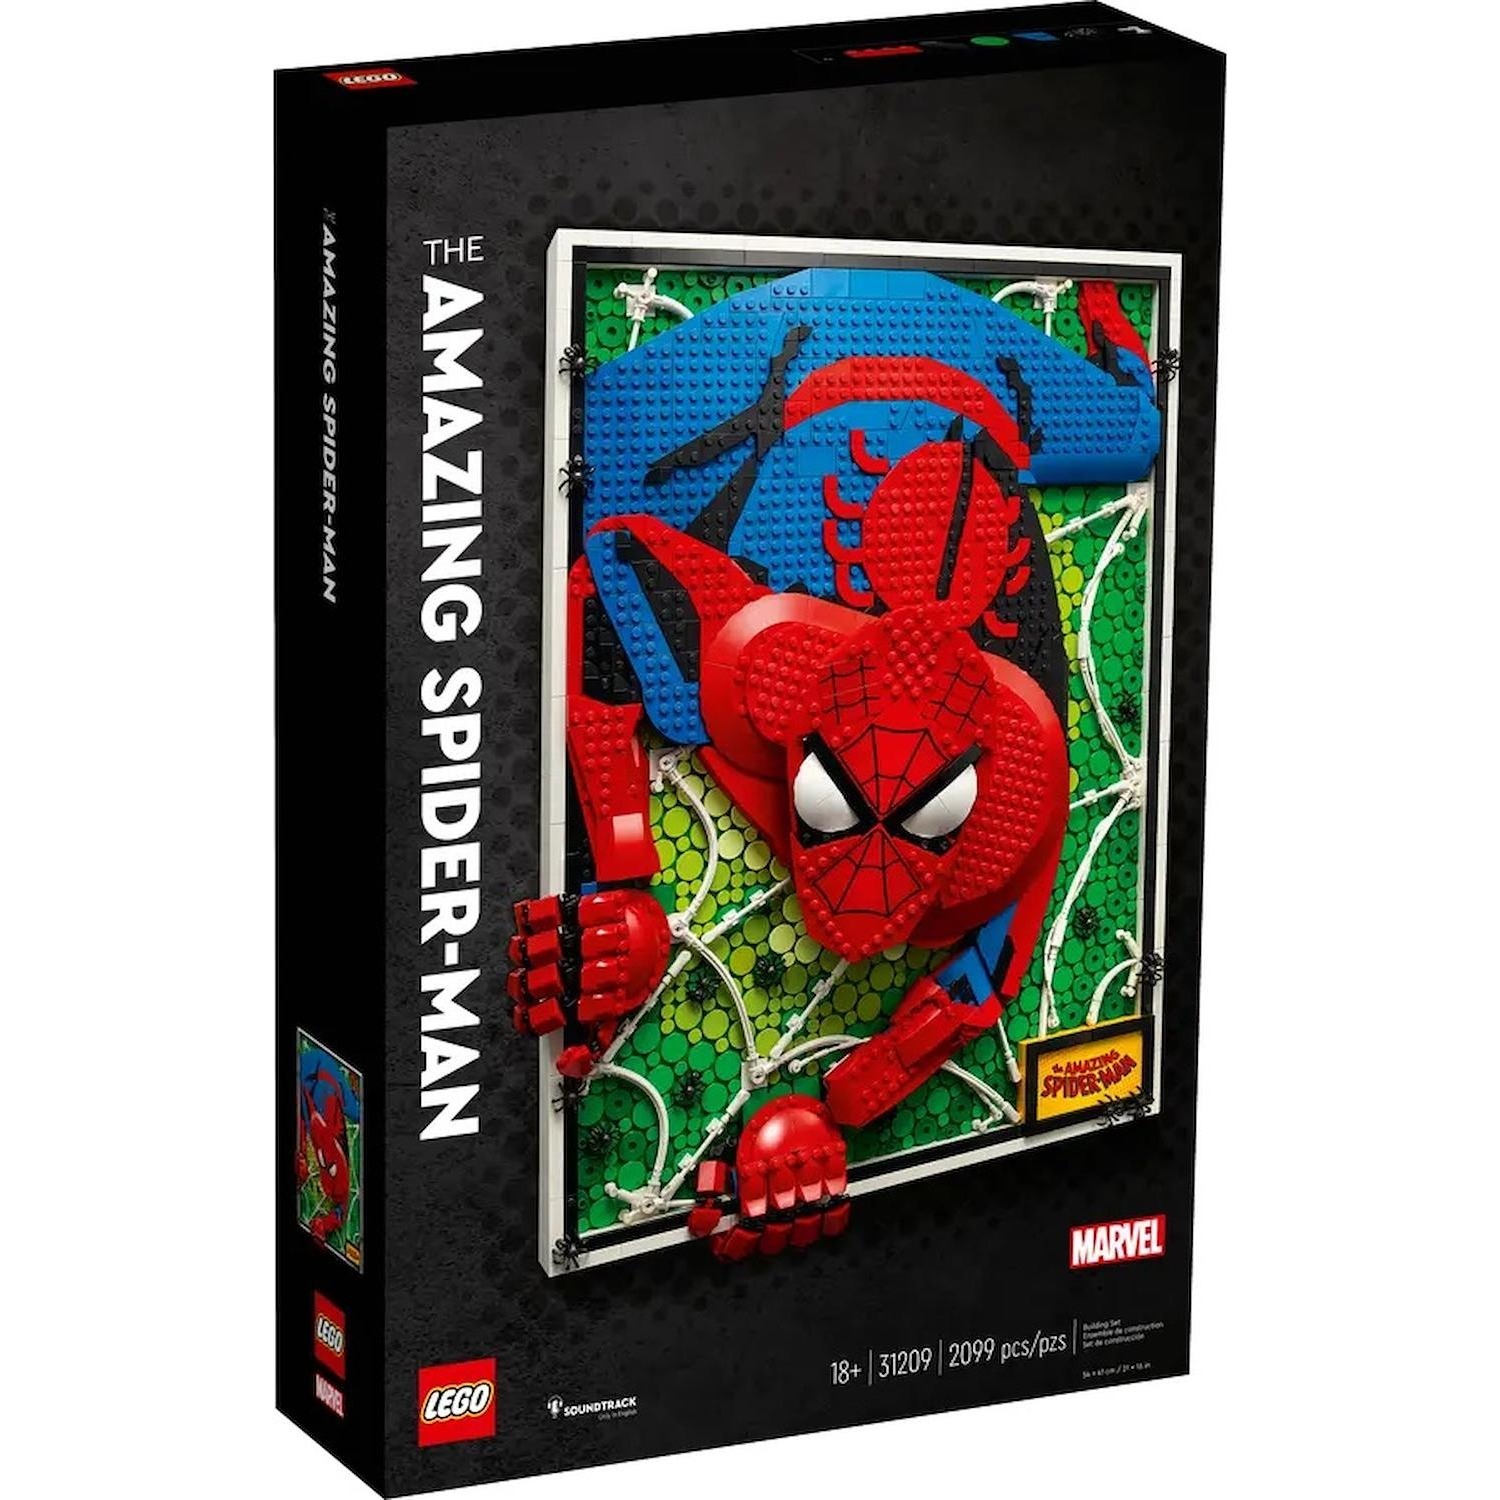 Immagine per Lego ART The Amazing Spider-Man da DIMOStore